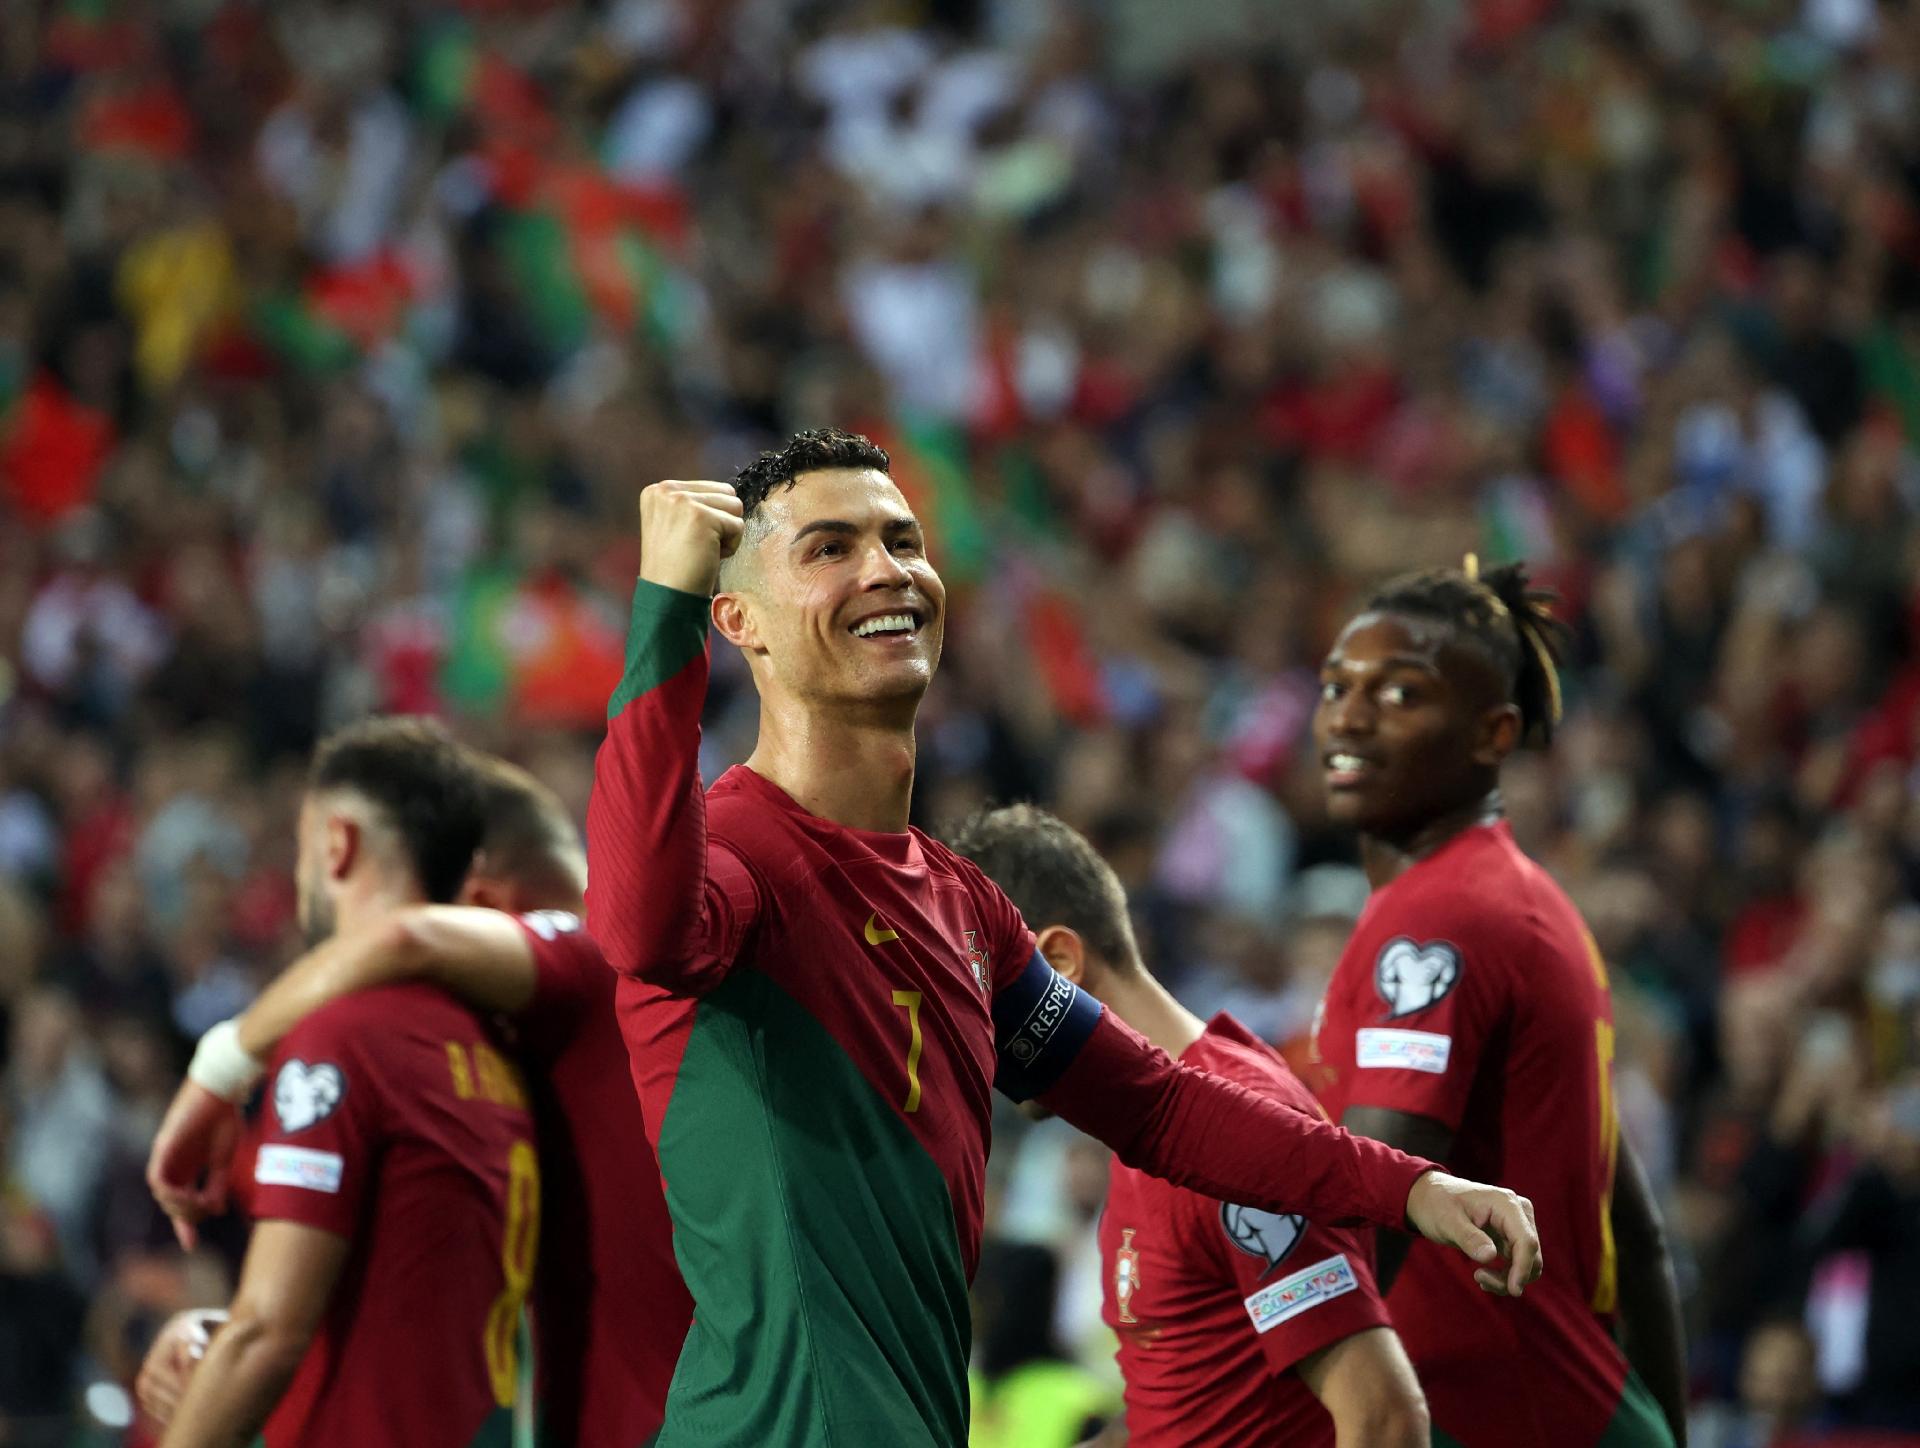 Cristiano Ronaldo brilha, e Portugal vence Eslováquia em jogo agitado